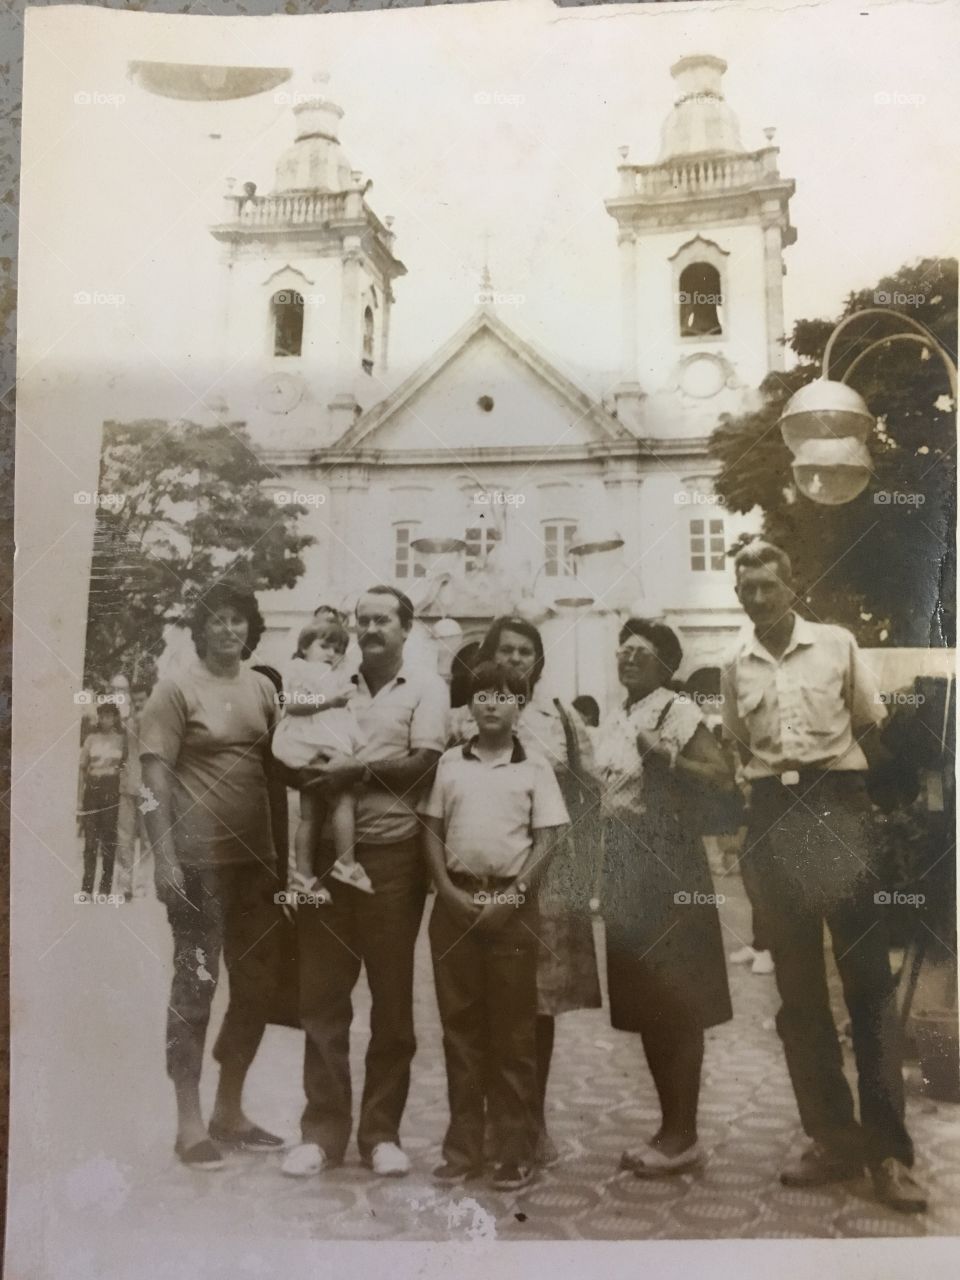 Uma foto da década de 80 em Aparecida, no Santuário Nacional, na Basílica Antiga!
Minha família, com meus avós Nória e Manelão. 
📸
#retrô
#fotografia